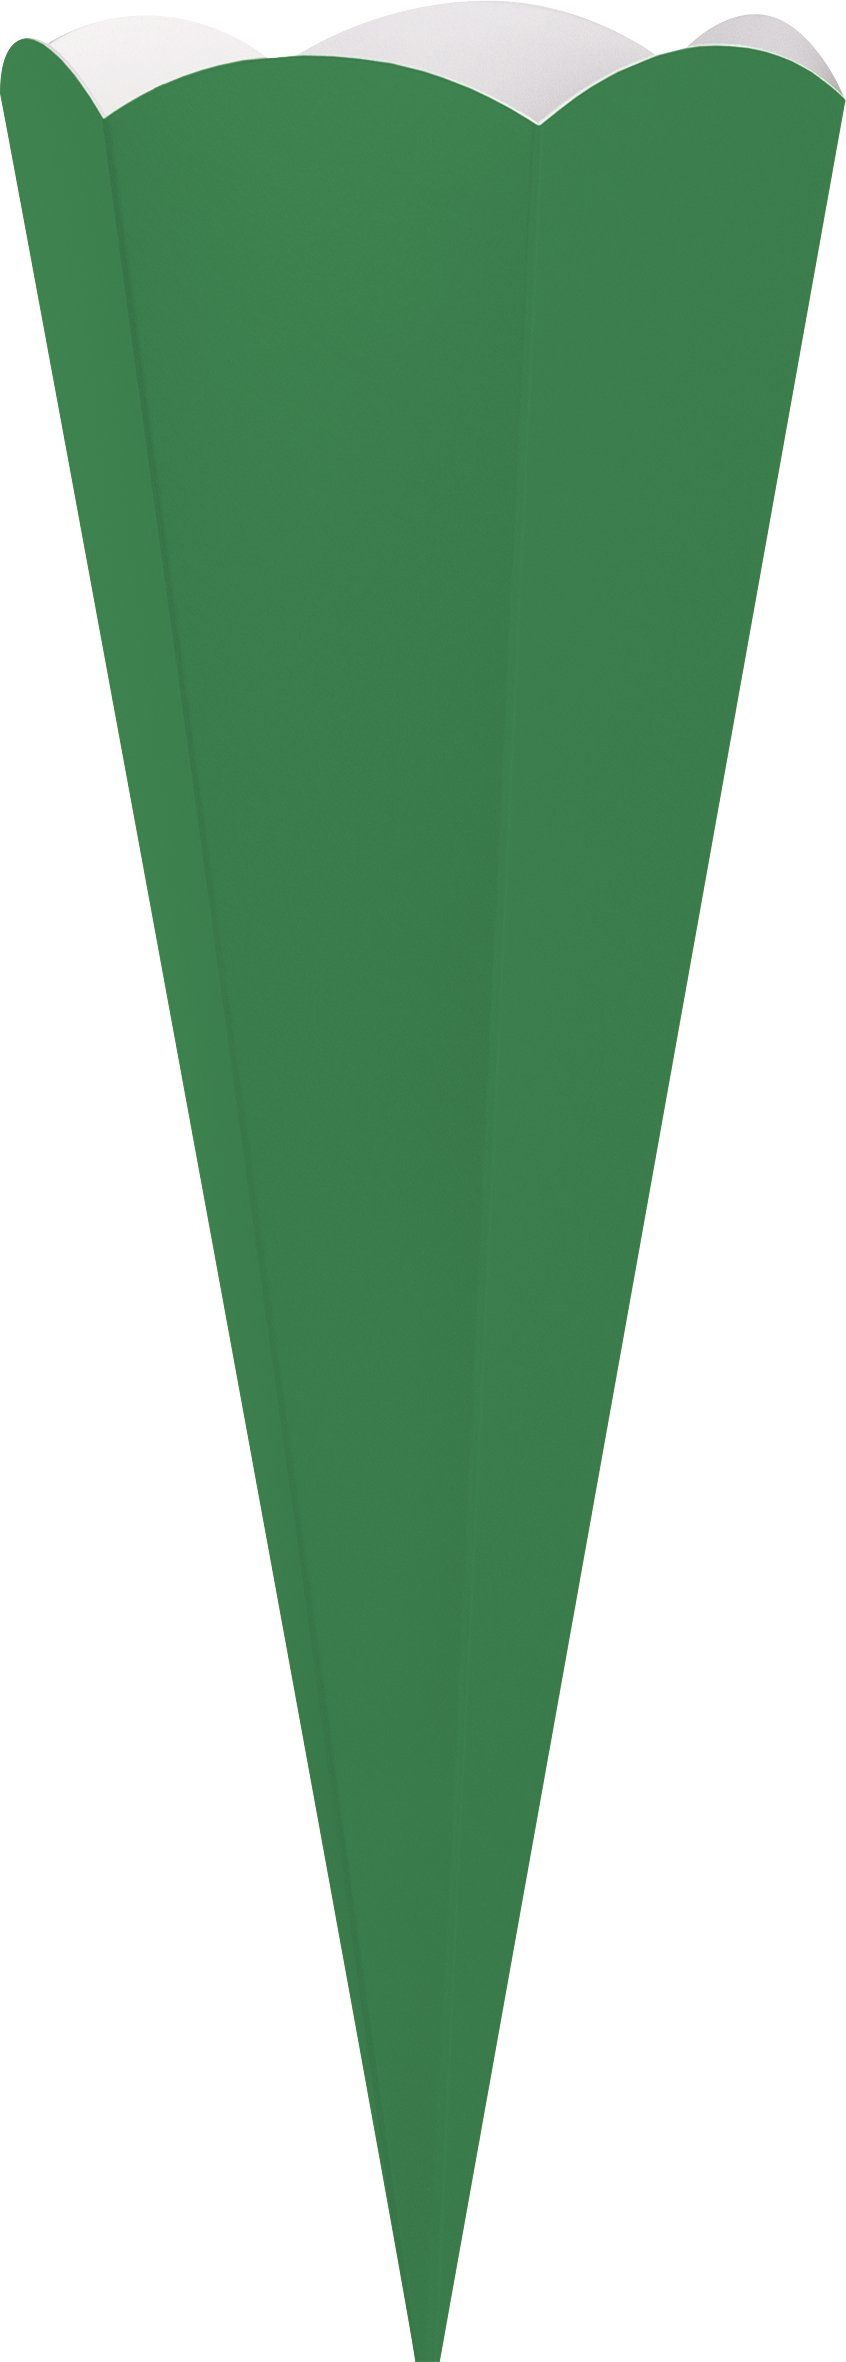 cm Grün 41 Geschwister-Schultüten-Zuschnitt, Schultüte Heyda